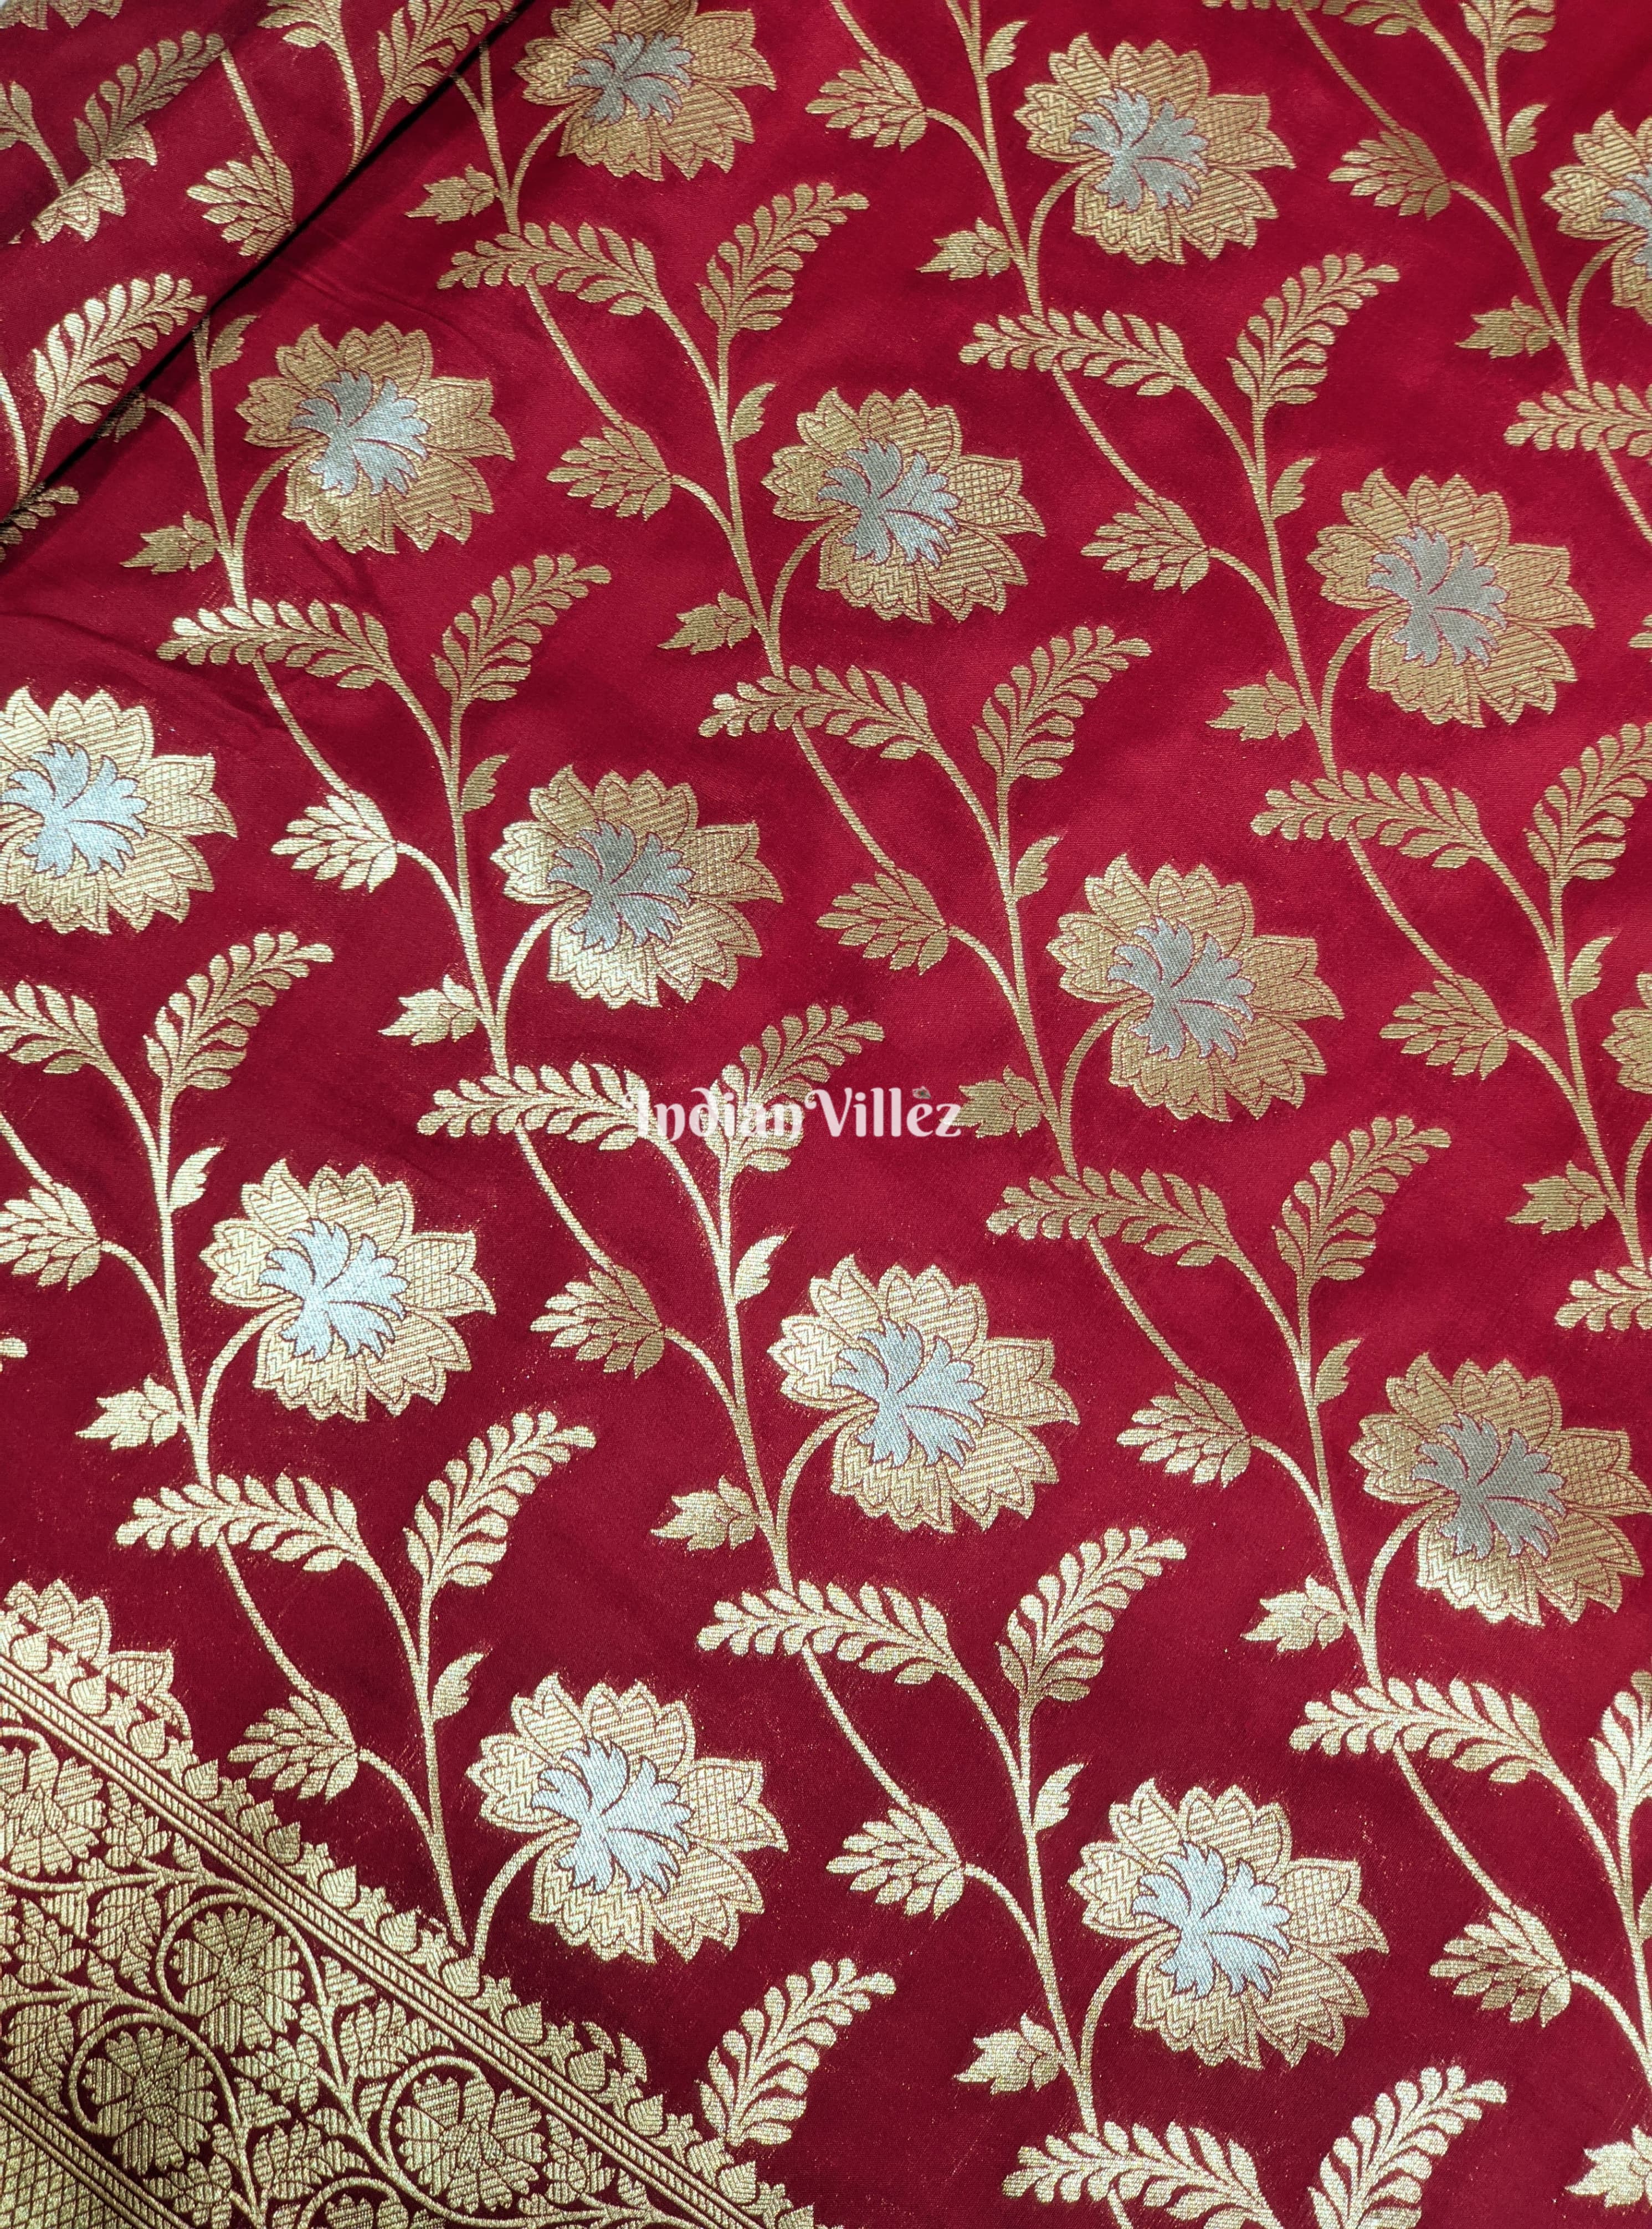 Cherry Red Color With Floral Design Pure Banarasi Katan Saree